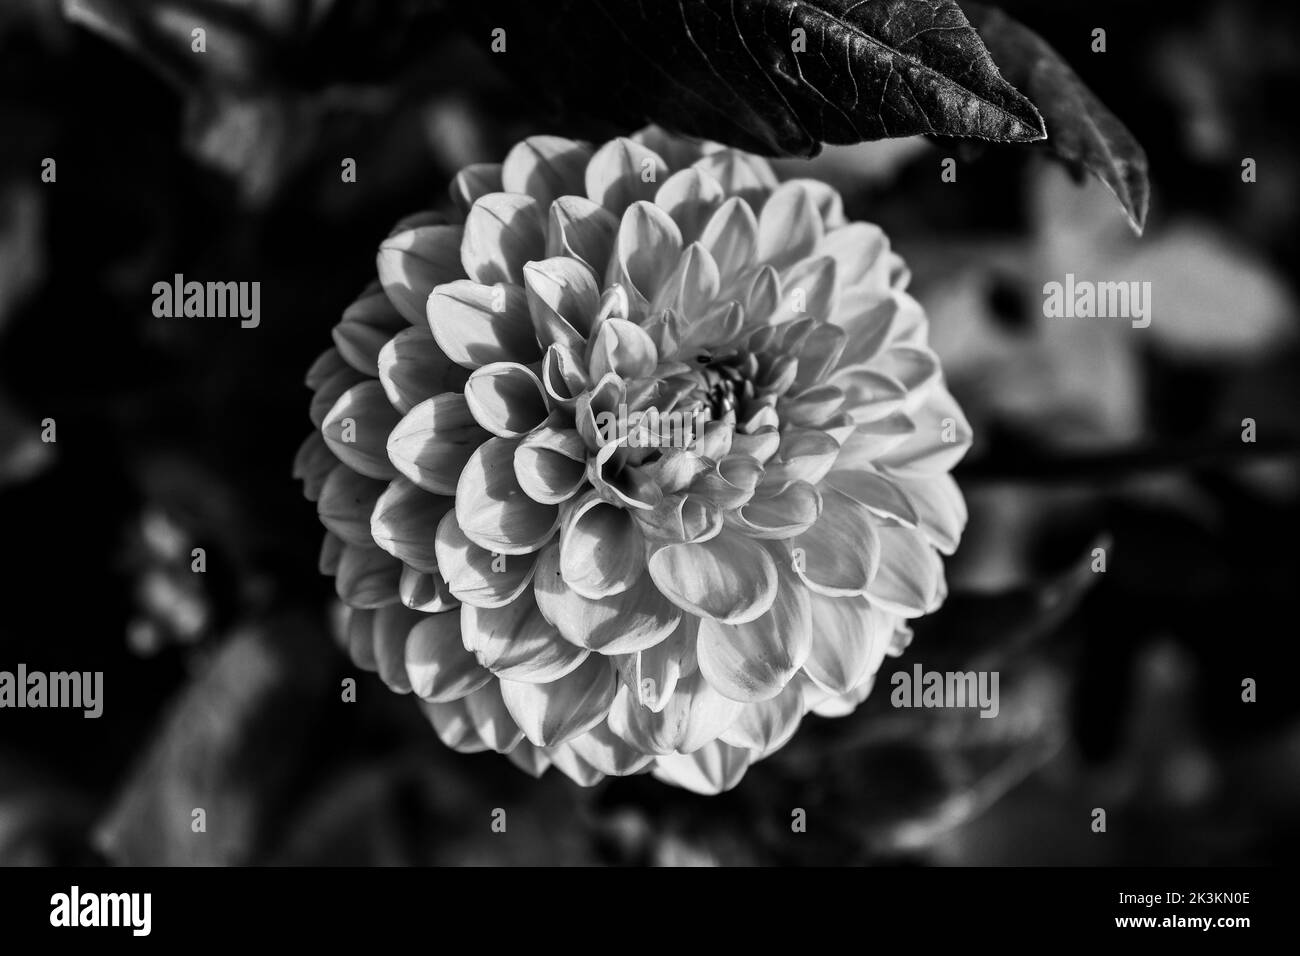 Uno sguardo più da vicino ad un fiore di dahlia arancione, foto fatta in bianco e nero Foto Stock